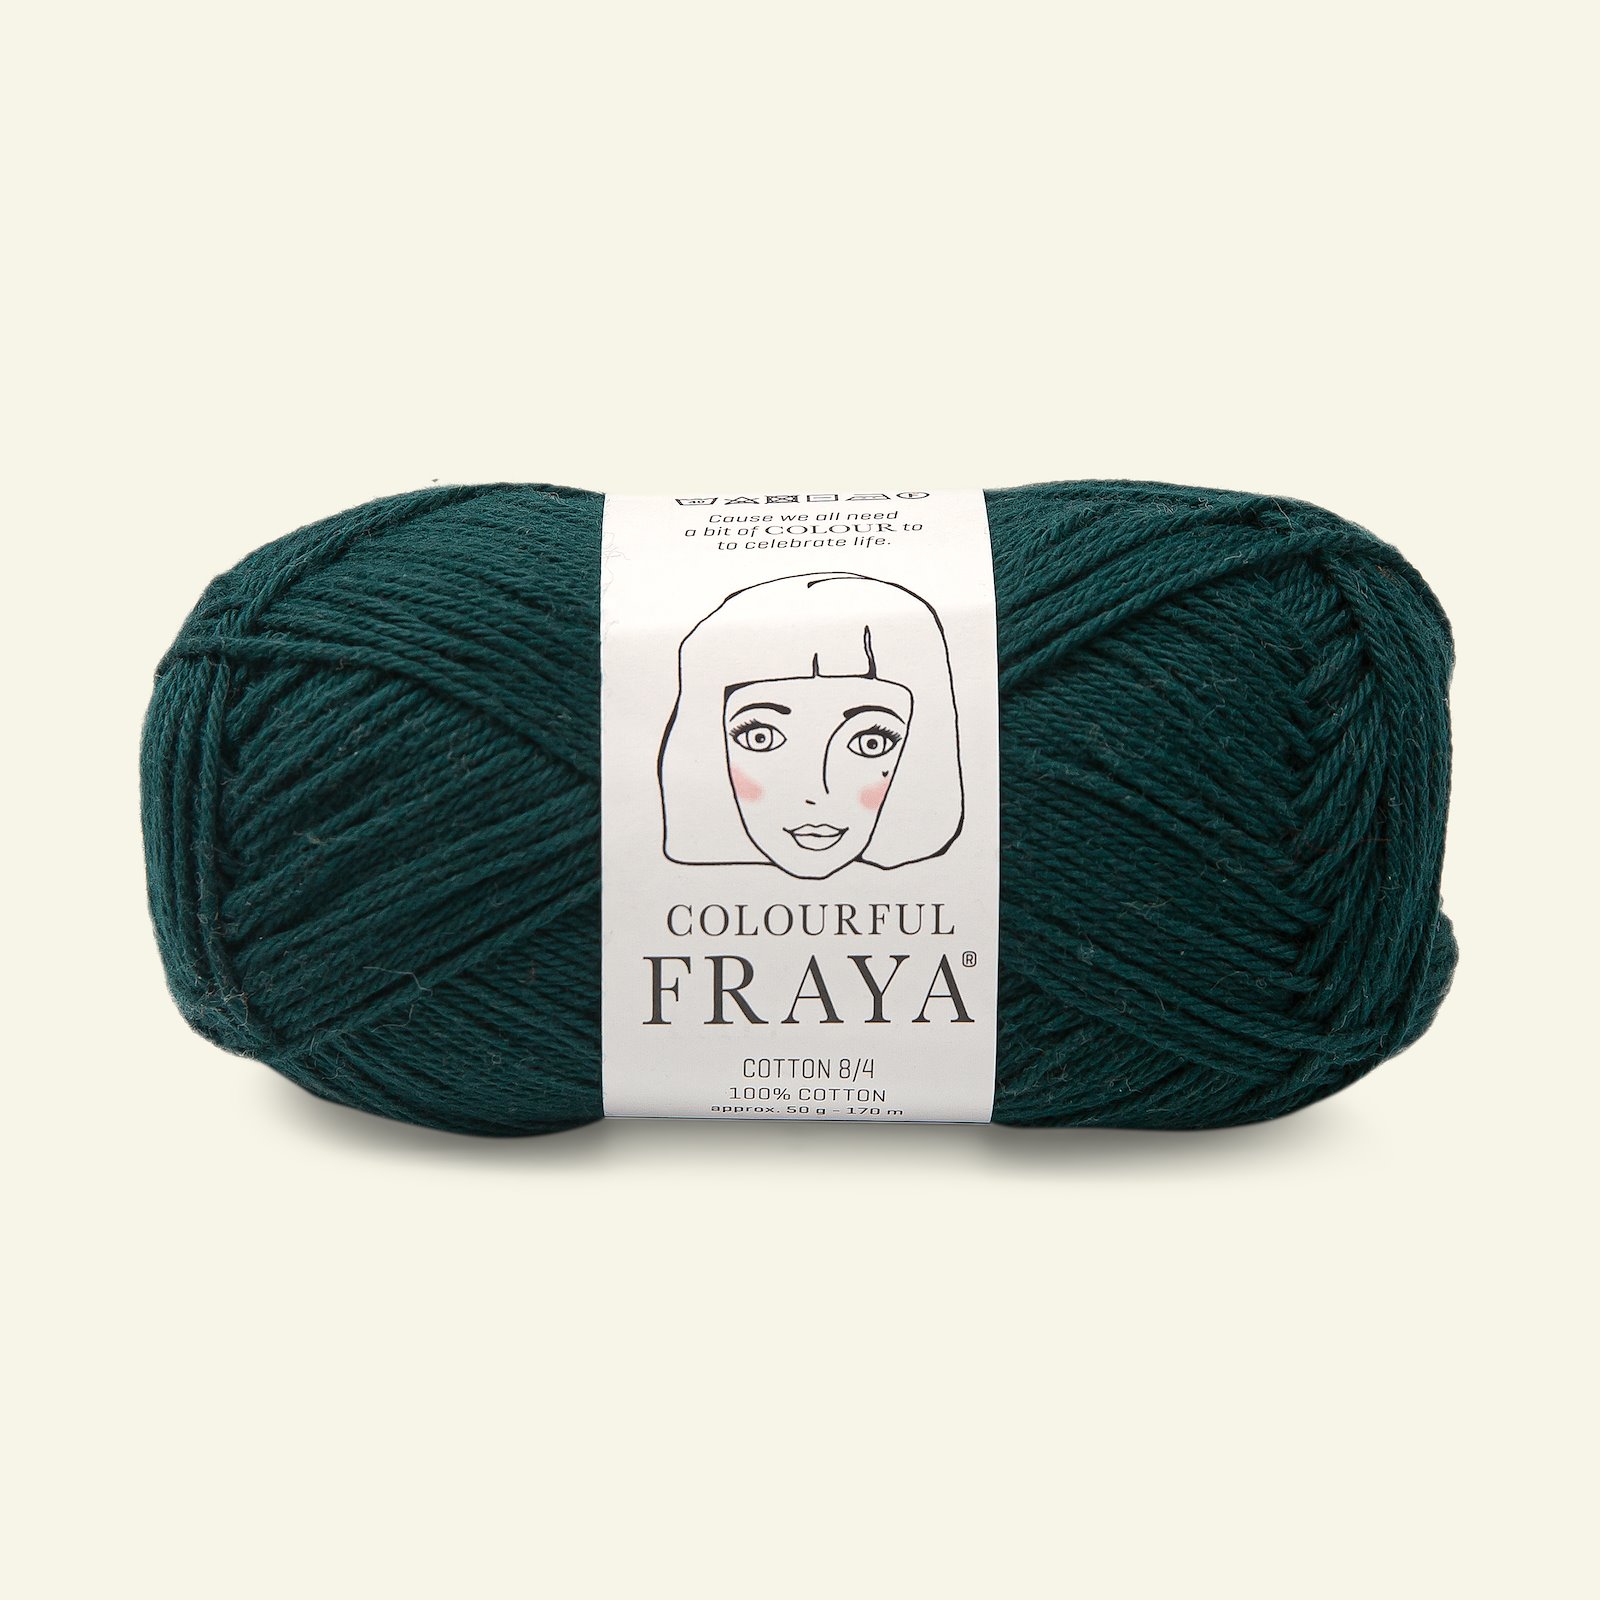 FRAYA, 100% cotton 8/4  yarn  "Colourful", bottle green 90060003_pack